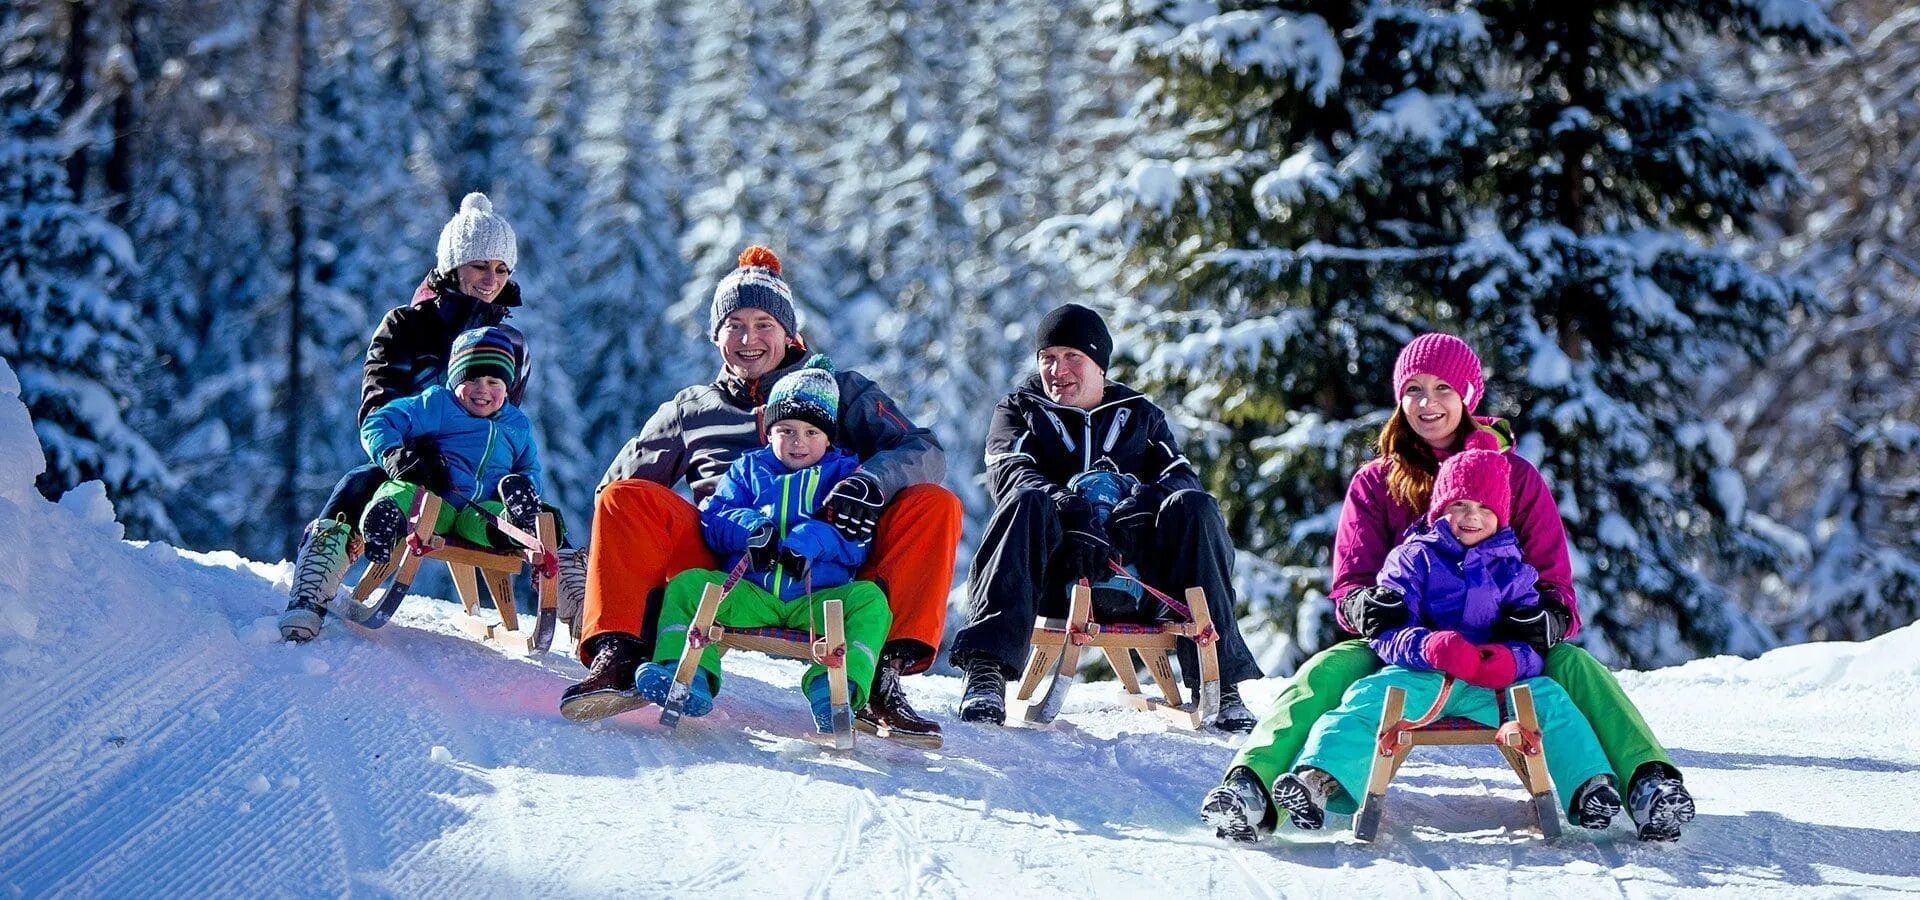 Active holidays. Семья горы снег. Winter activities. Winter Holiday. Зимние виды спорта семья.